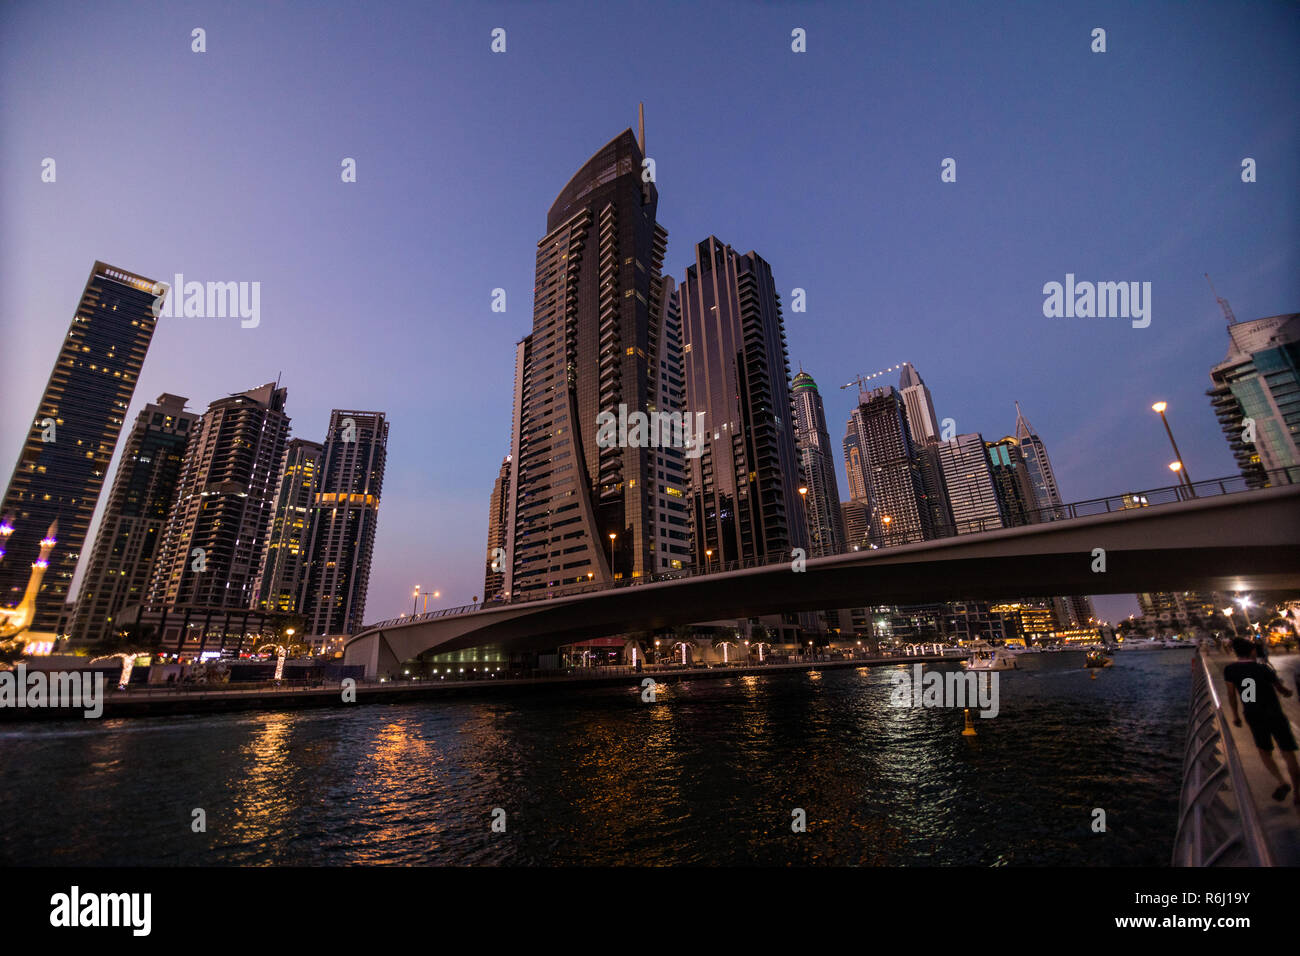 Skycrapers at Dubai Marina February 2017, Dubai marina at night night cityscape lights Stock Photo